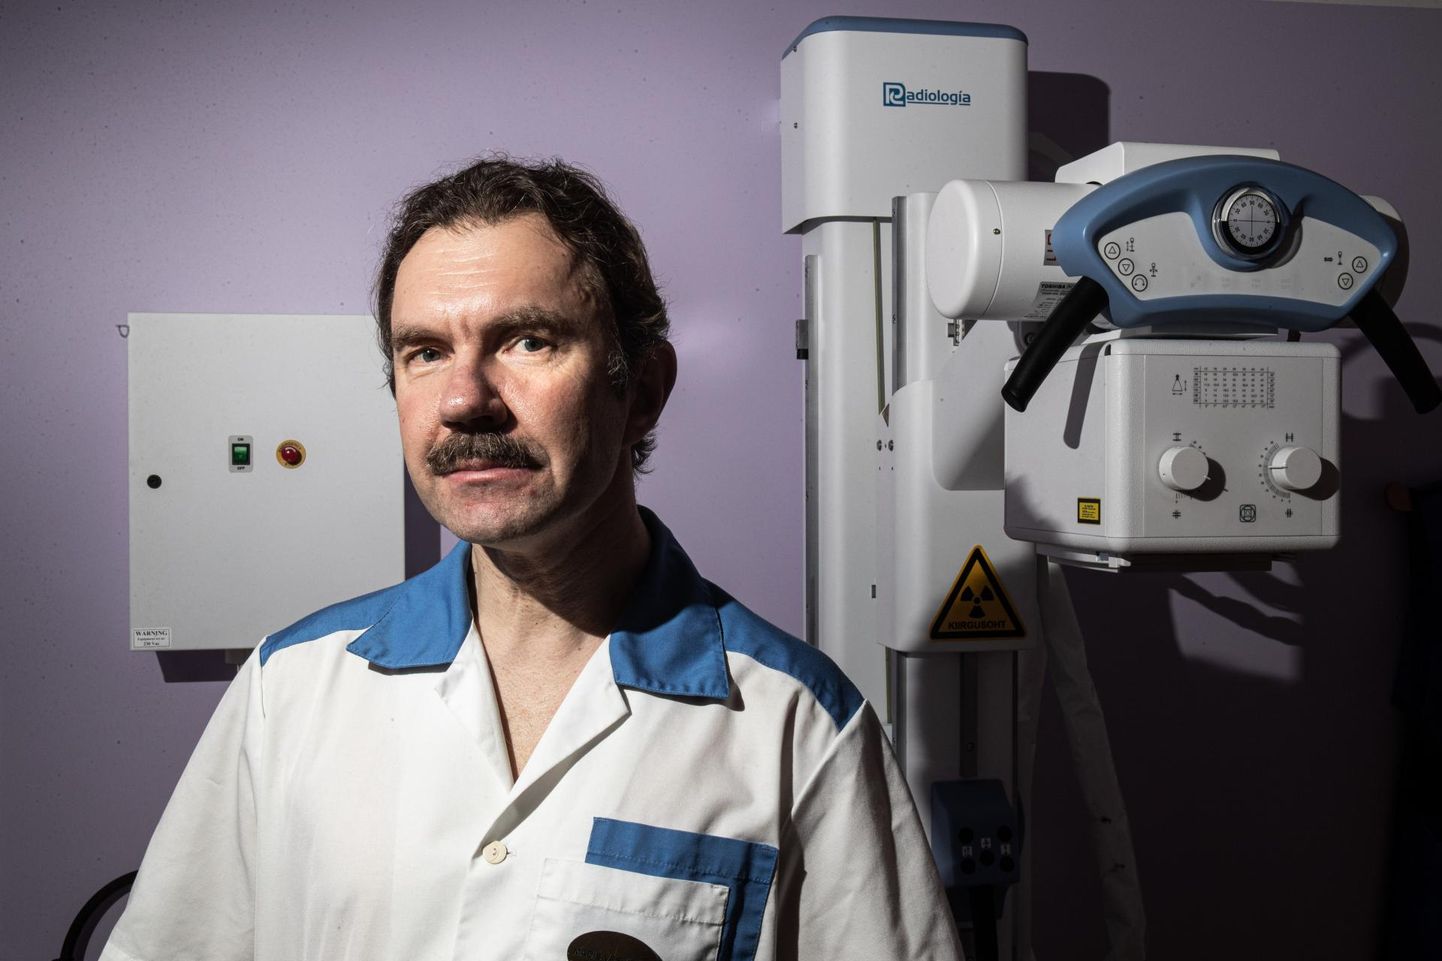 Семейный врач Мадис Вескимяги хранит в новом центре здоровья старый рентгеновский аппарат, на котором чиновники несколько лет не разрешали ему работать.